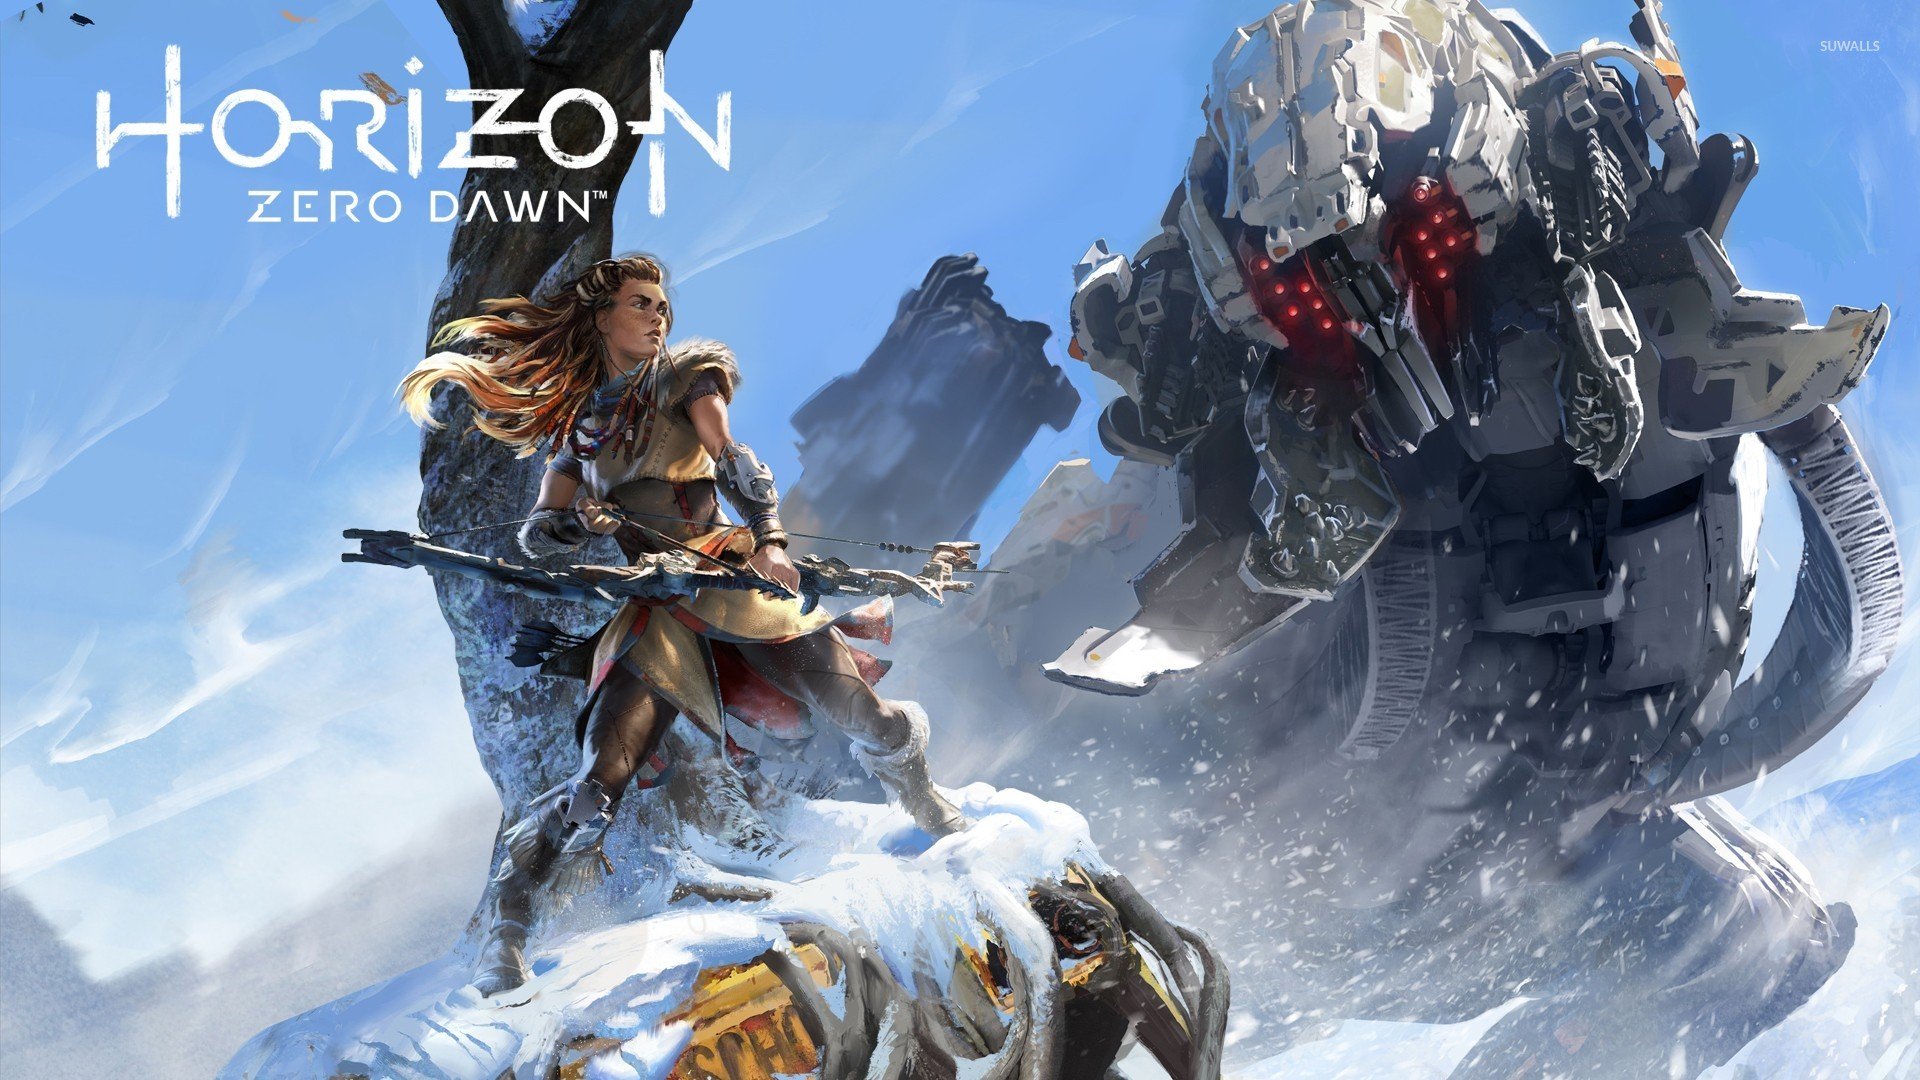 Horizon: Zero Dawn, Aloy (Horizon: Zero Dawn), Guerrilla games Wallpaper